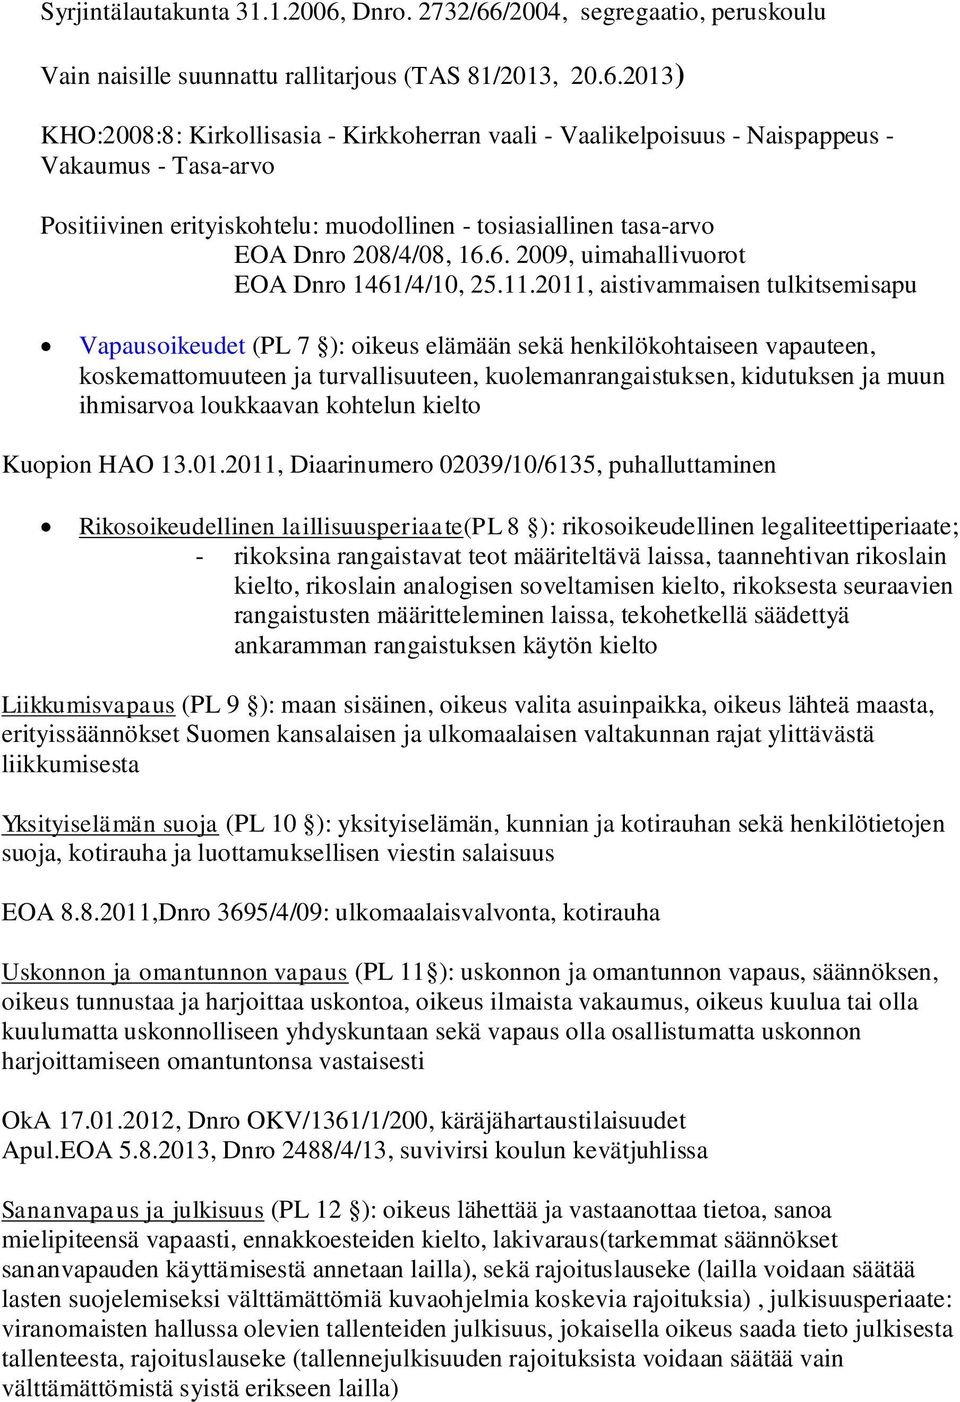 /2004, segregaatio, peruskoulu Vain naisille suunnattu rallitarjous (TAS 81/2013, 20.6.